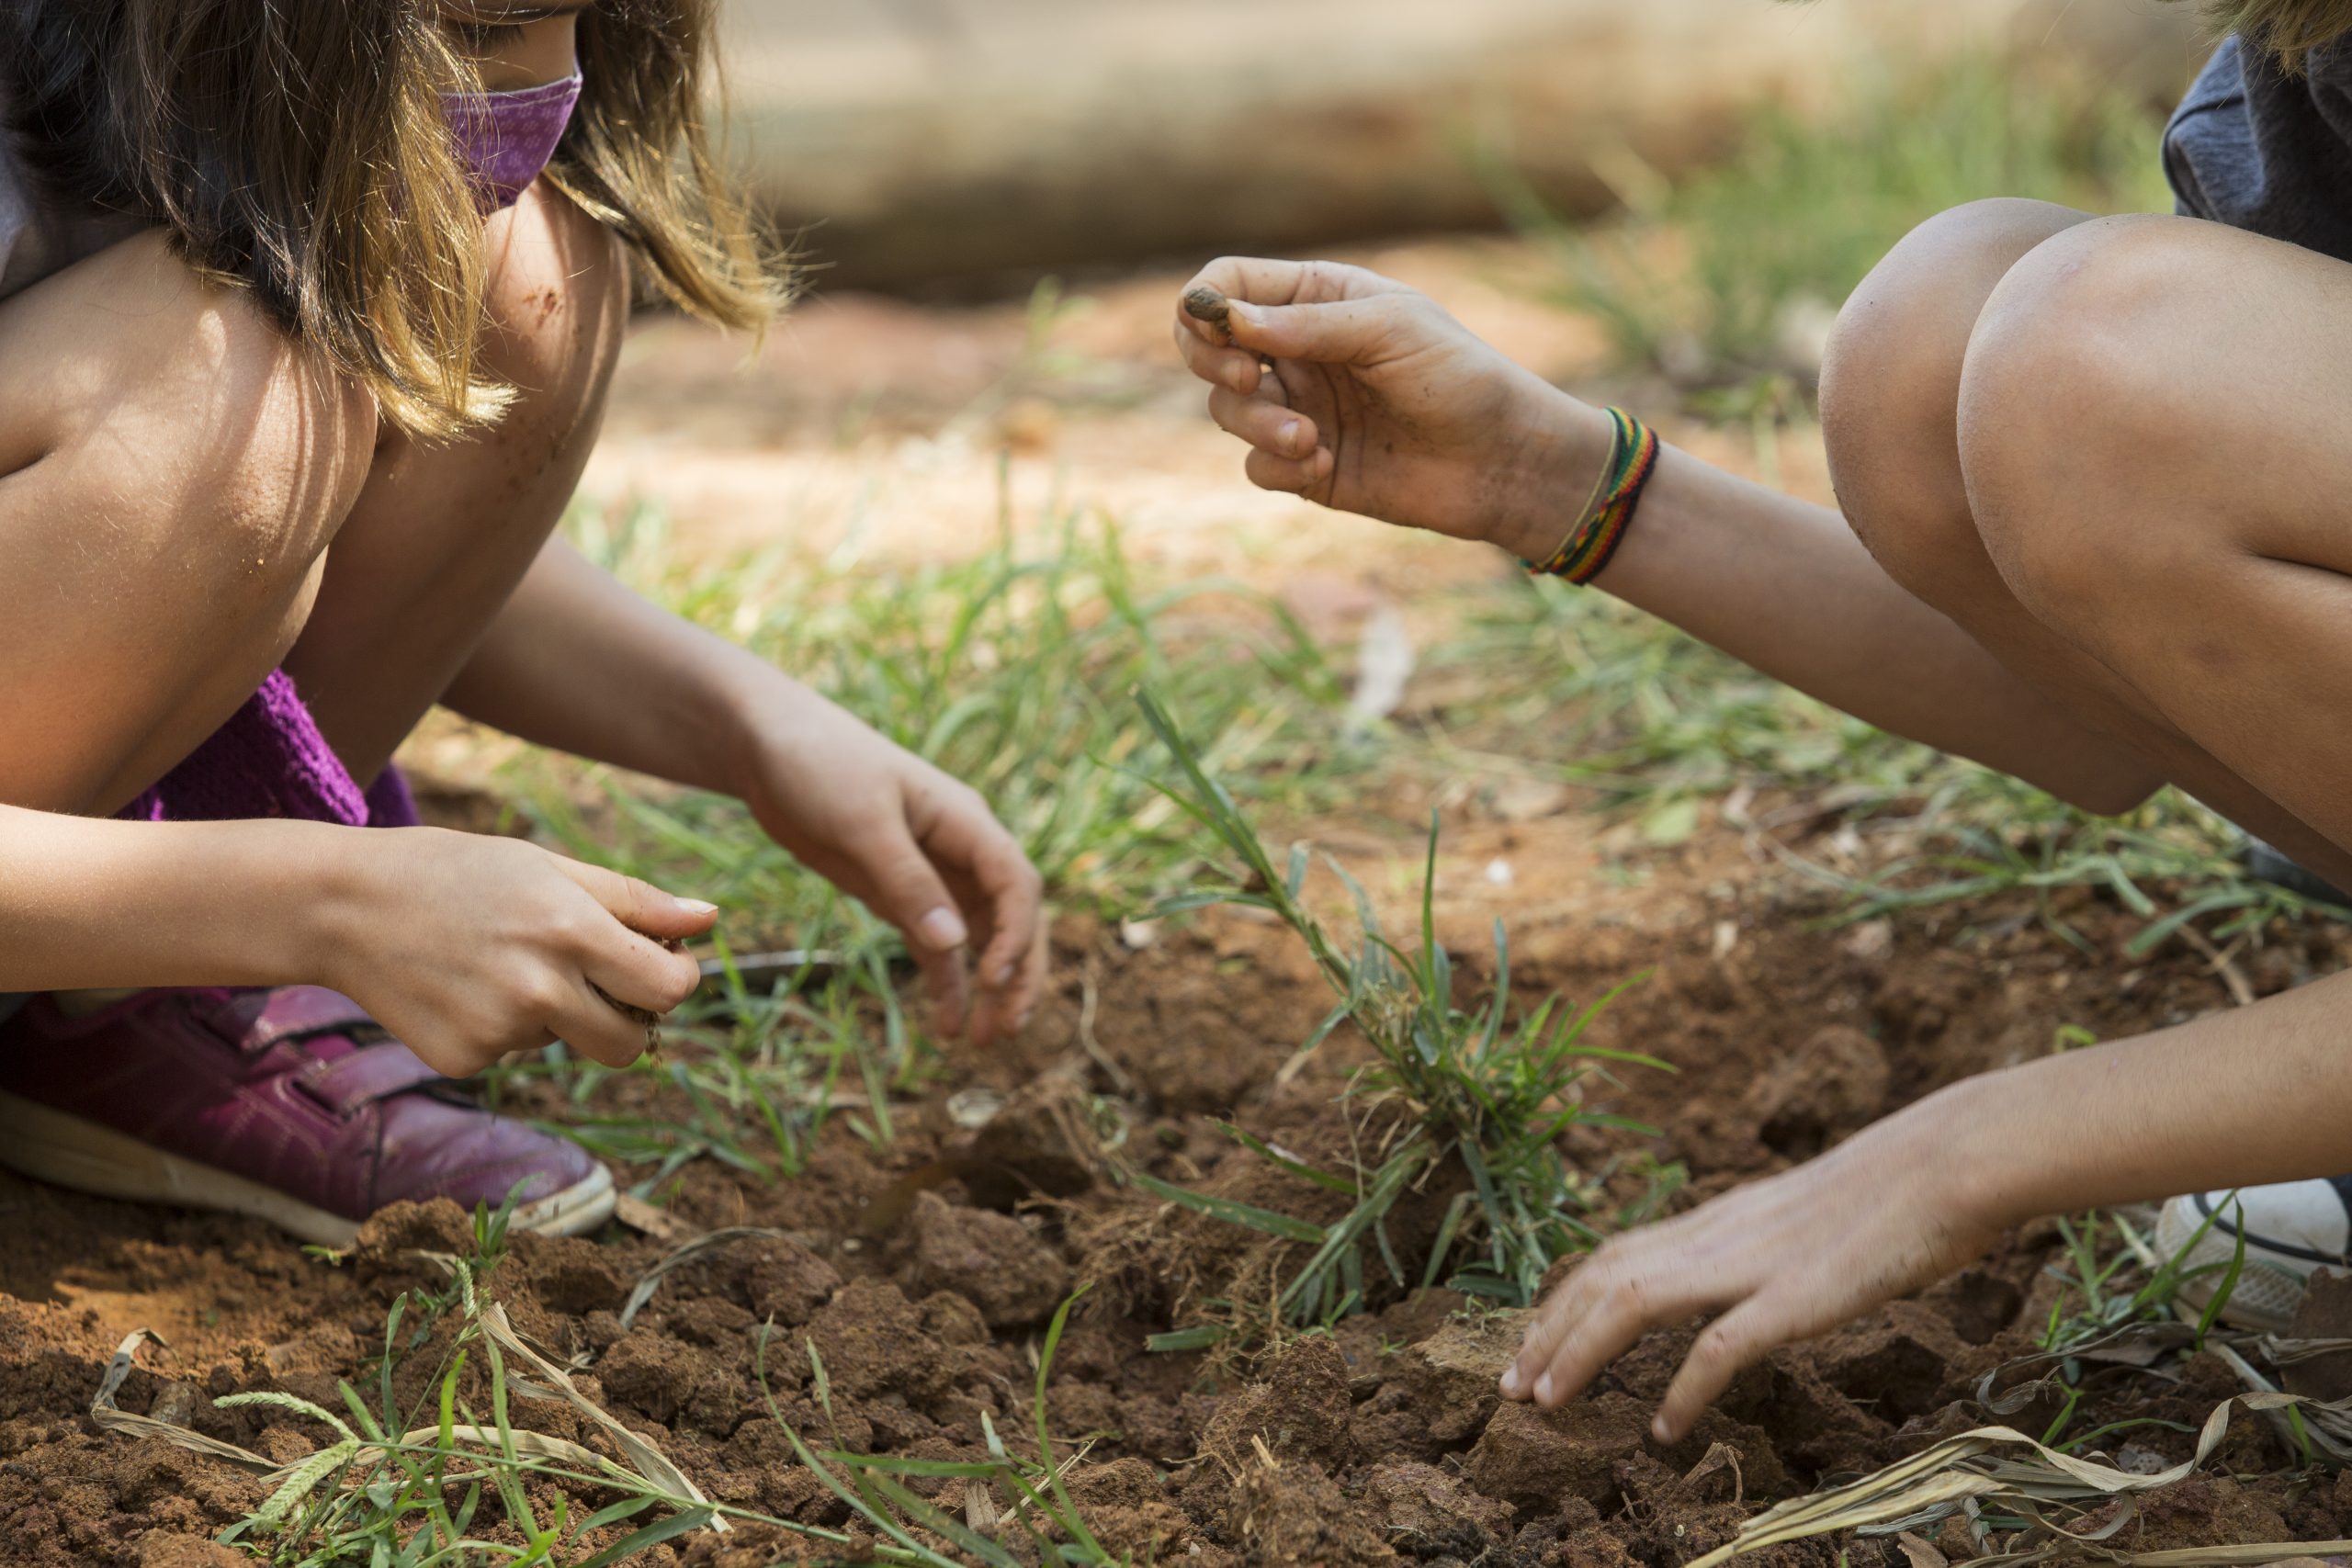 Duas crianças cavam a terra em busca de tesouros escondidos. Uma delas segura uma pedrinha encontrada.